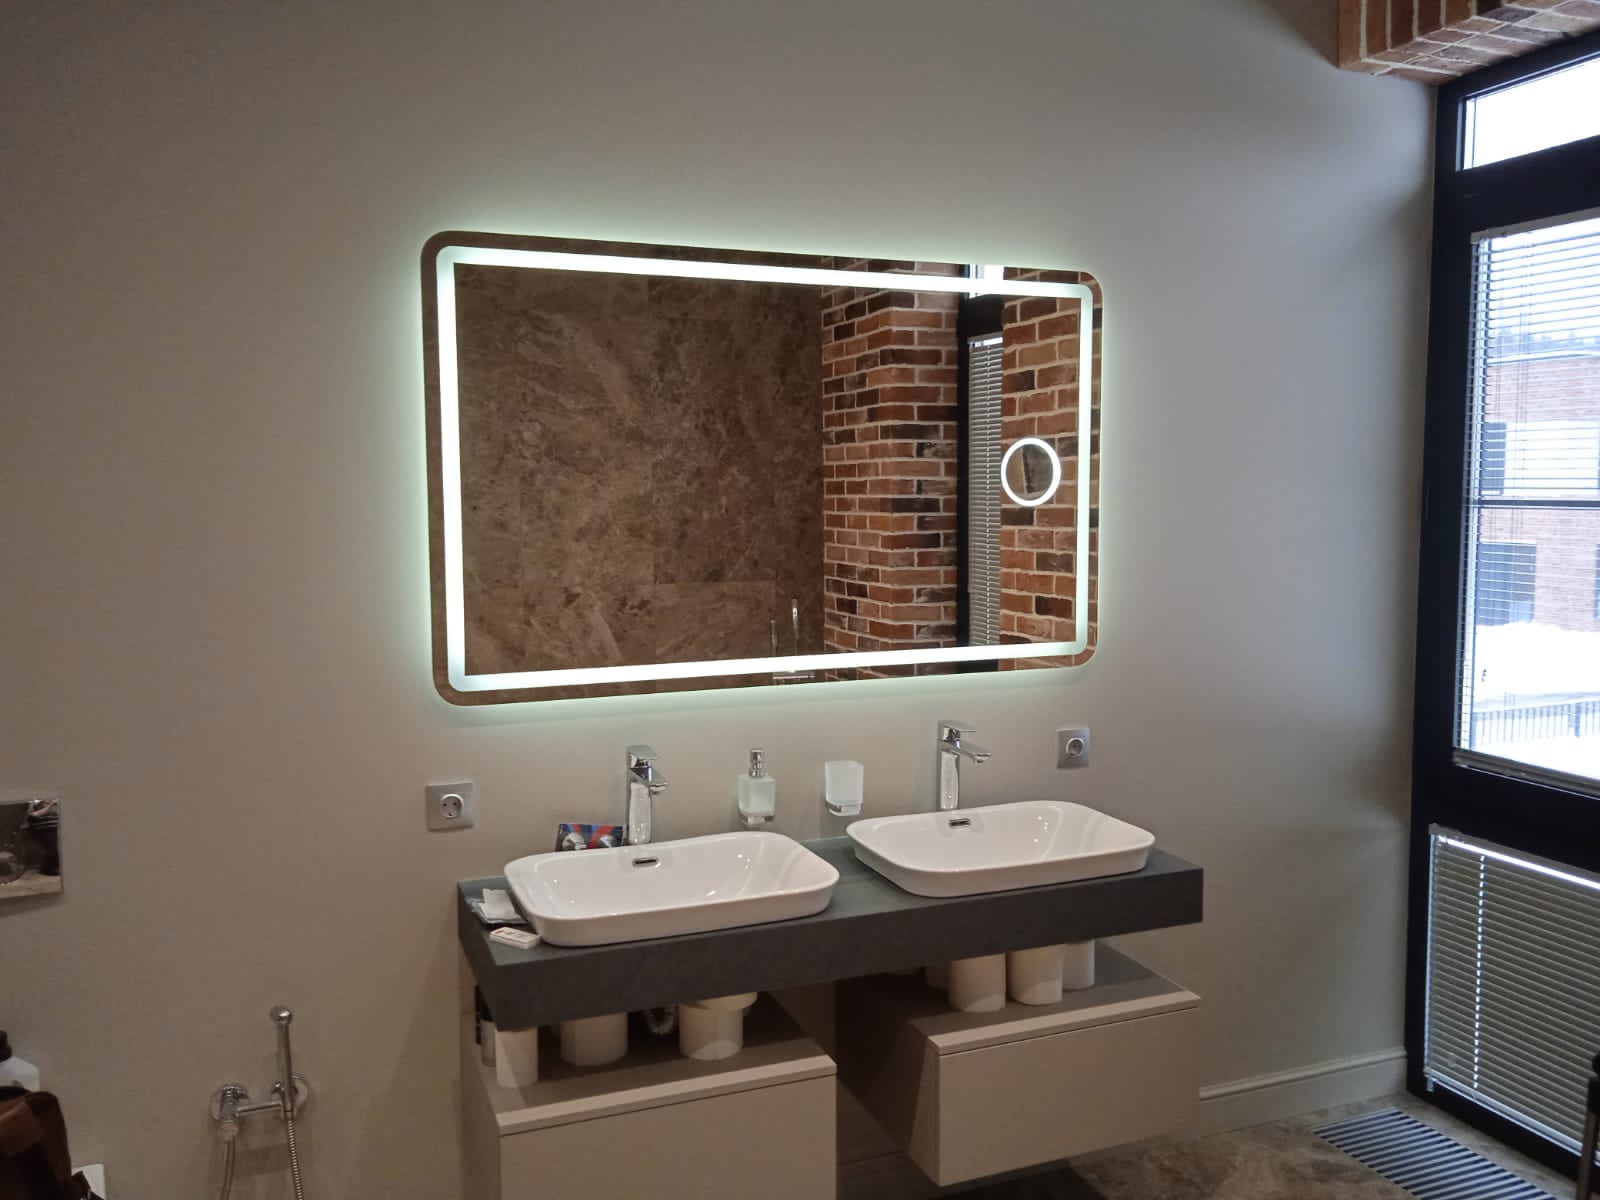 Зеркальный шкаф для ванной 40 см с подсветкой